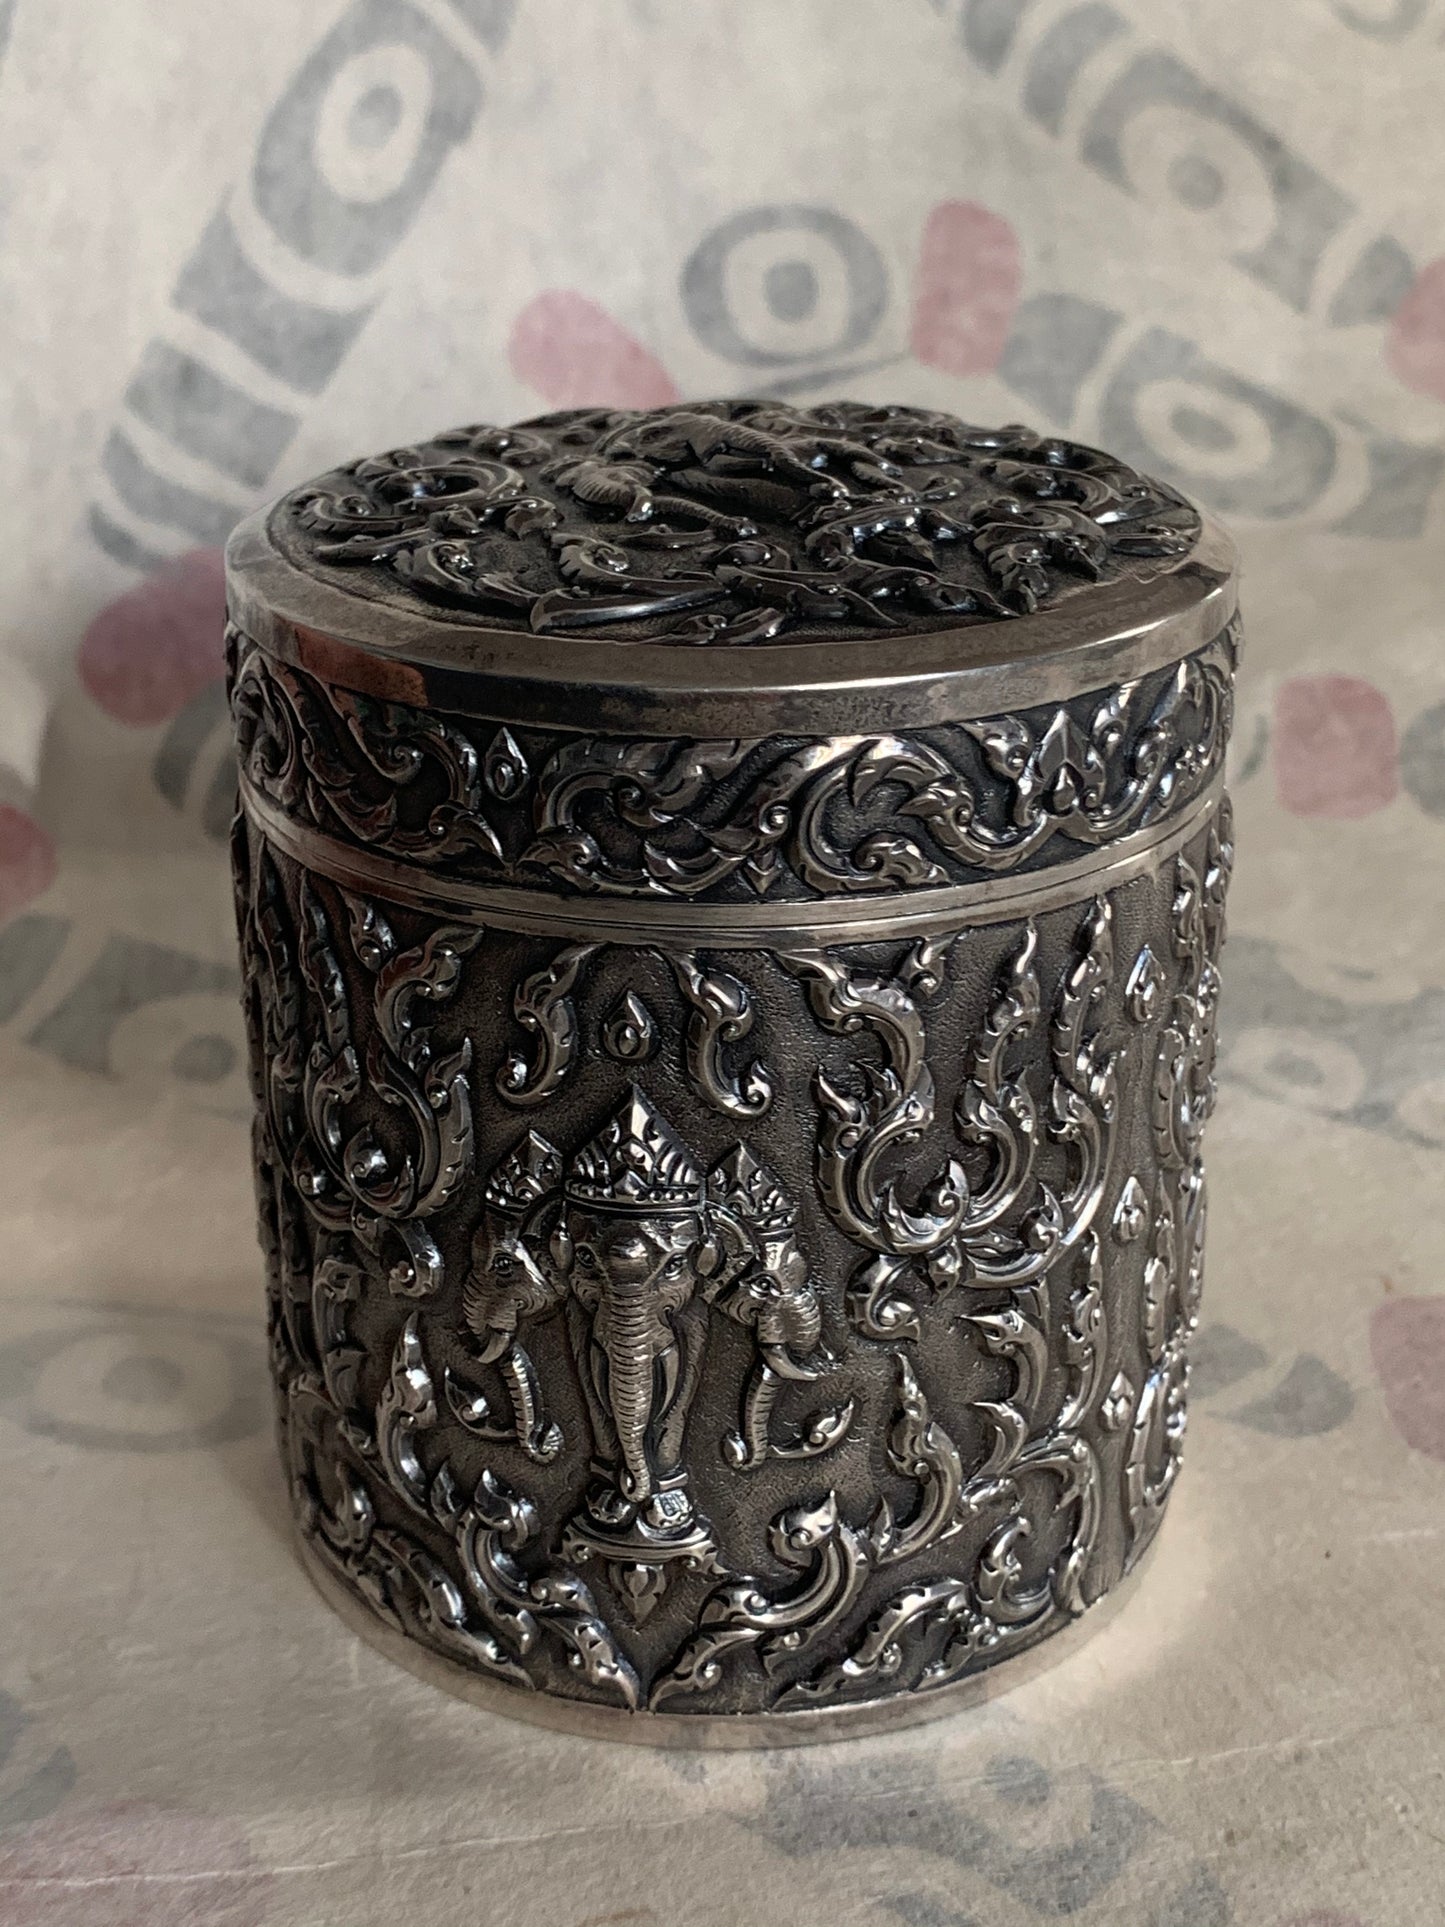 An antique cylindrical Thai silver box